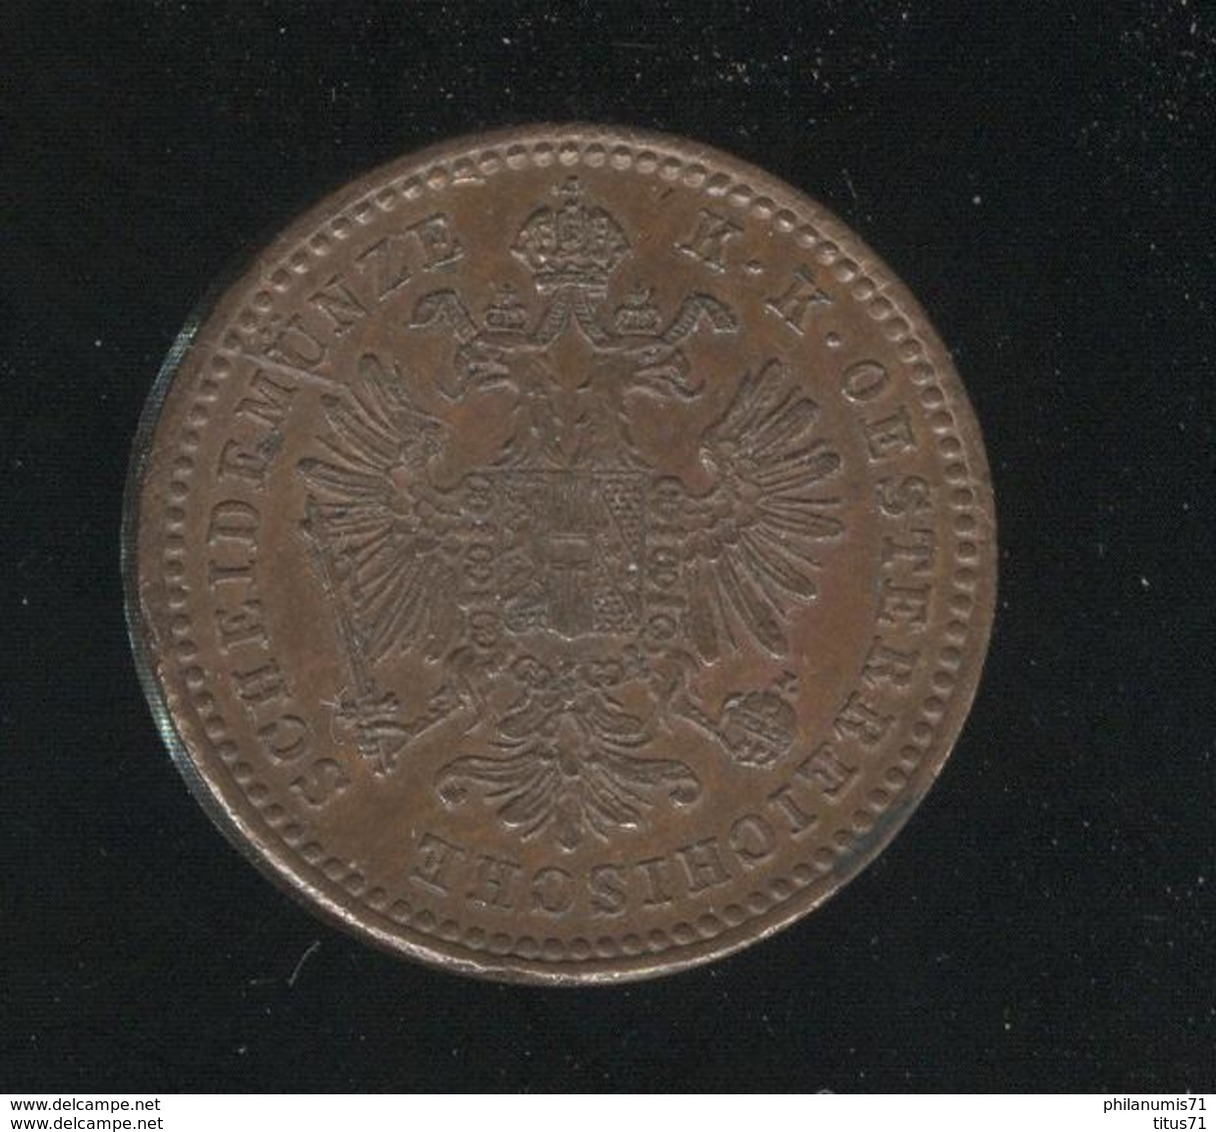 1 Kreuzer Autriche 1881 SUP - Autriche